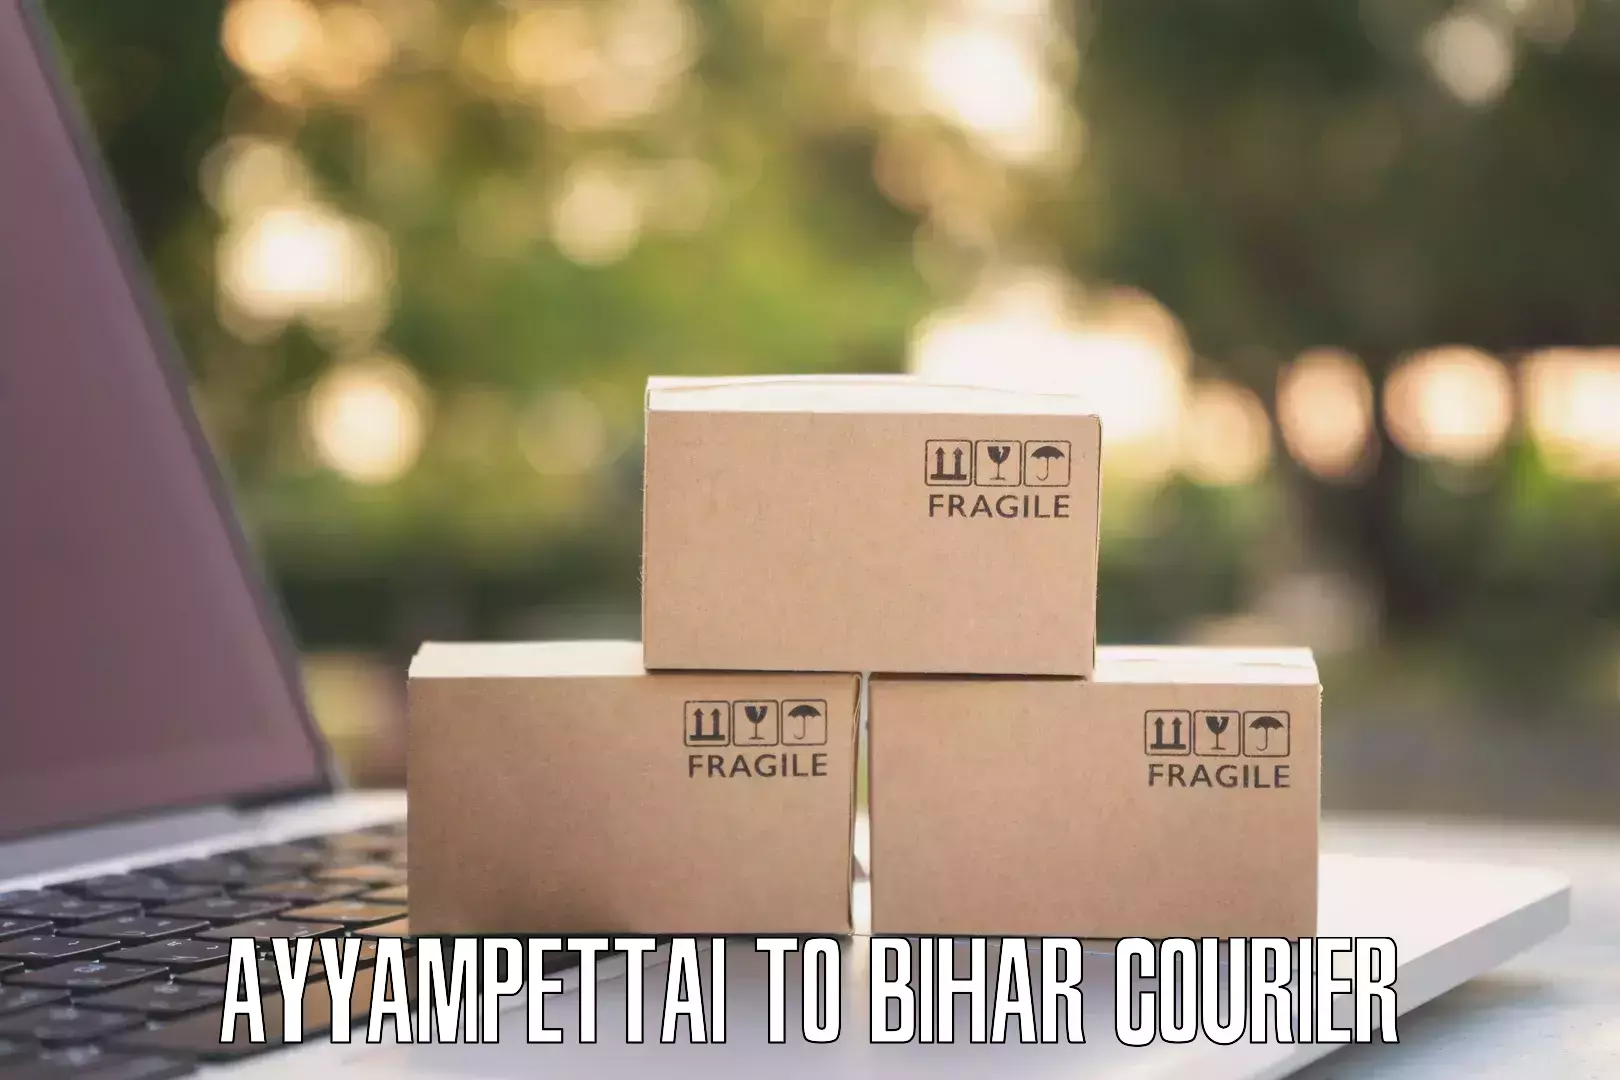 Online courier booking Ayyampettai to Bihar